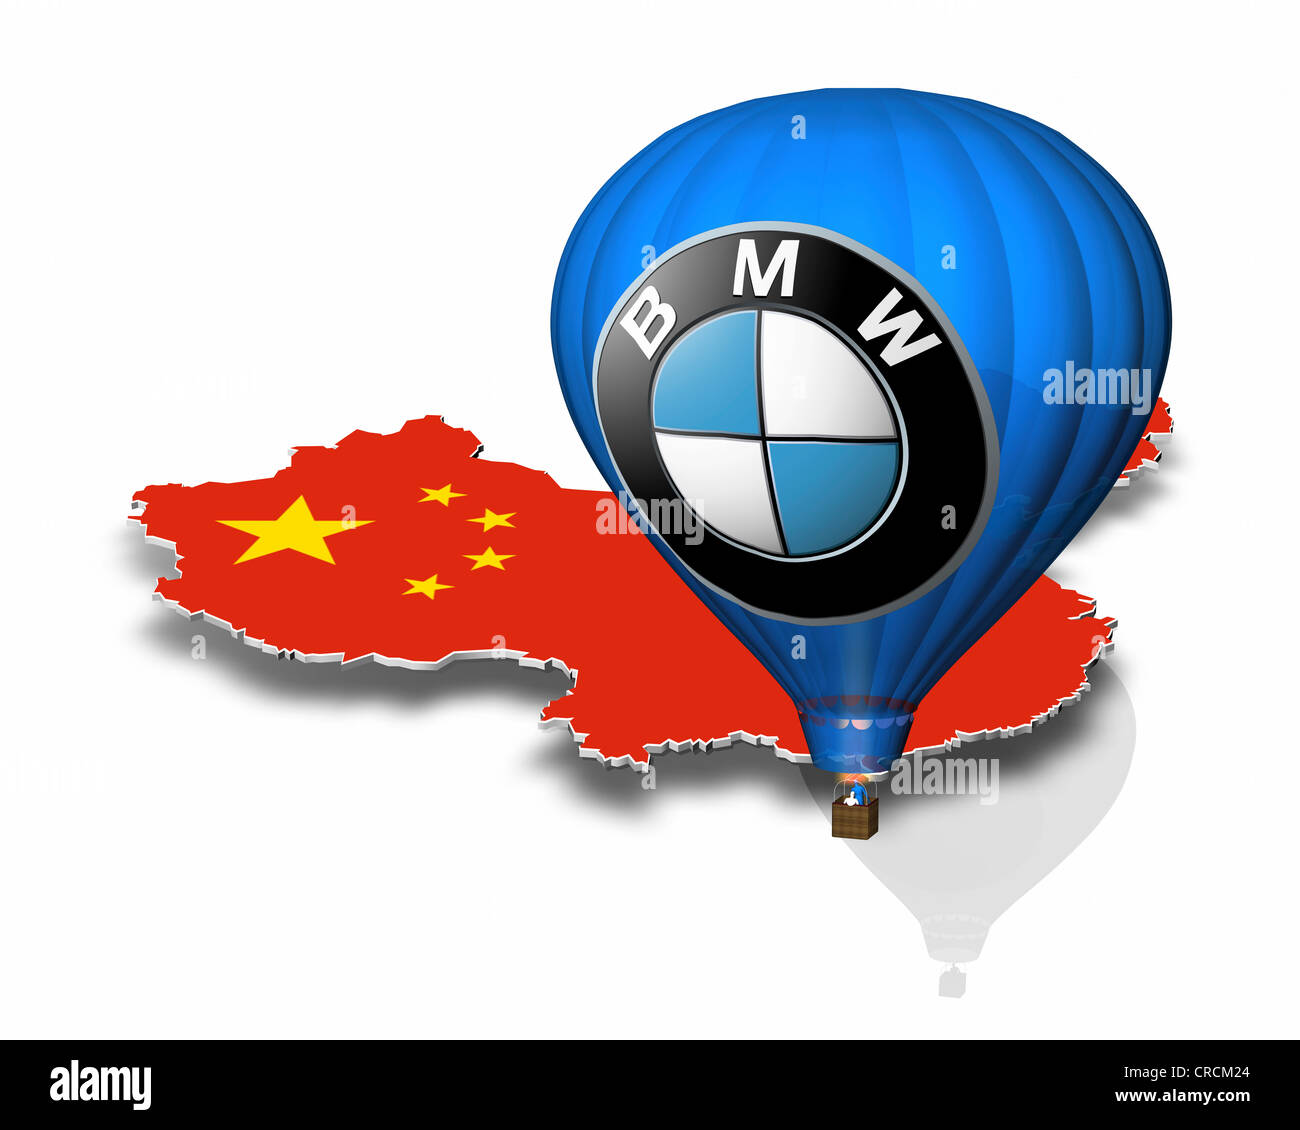 Profilo della Cina, mongolfiera, logo BMW Foto Stock